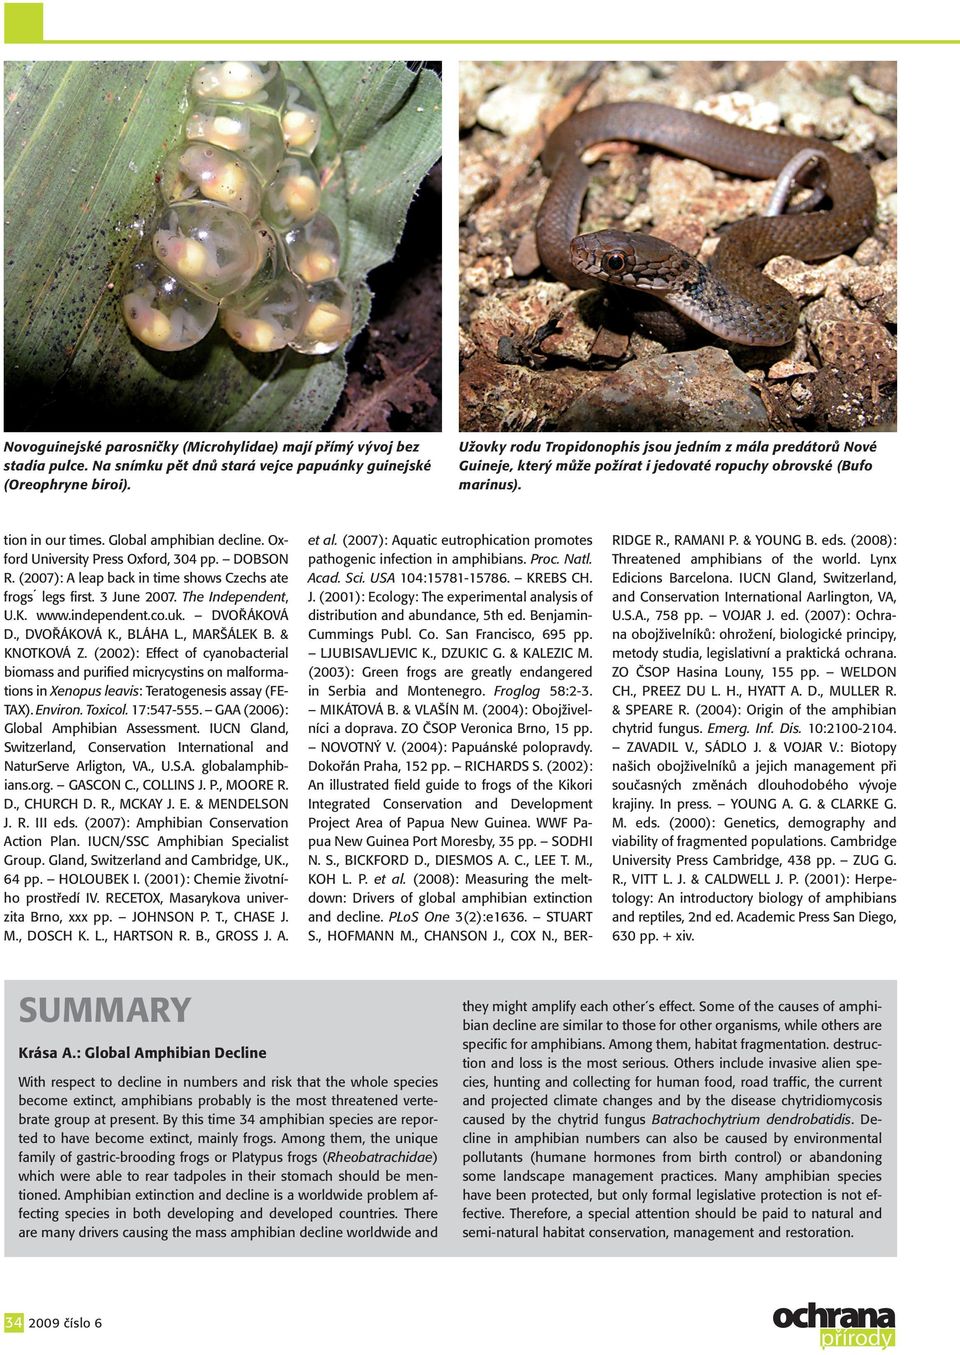 Oxford University Press Oxford, 304 pp. Dobson R. (2007): A leap back in time shows Czechs ate frogs legs first. 3 June 2007. The Independent, U.K. www.independent.co.uk. Dvořáková D., Dvořáková K.